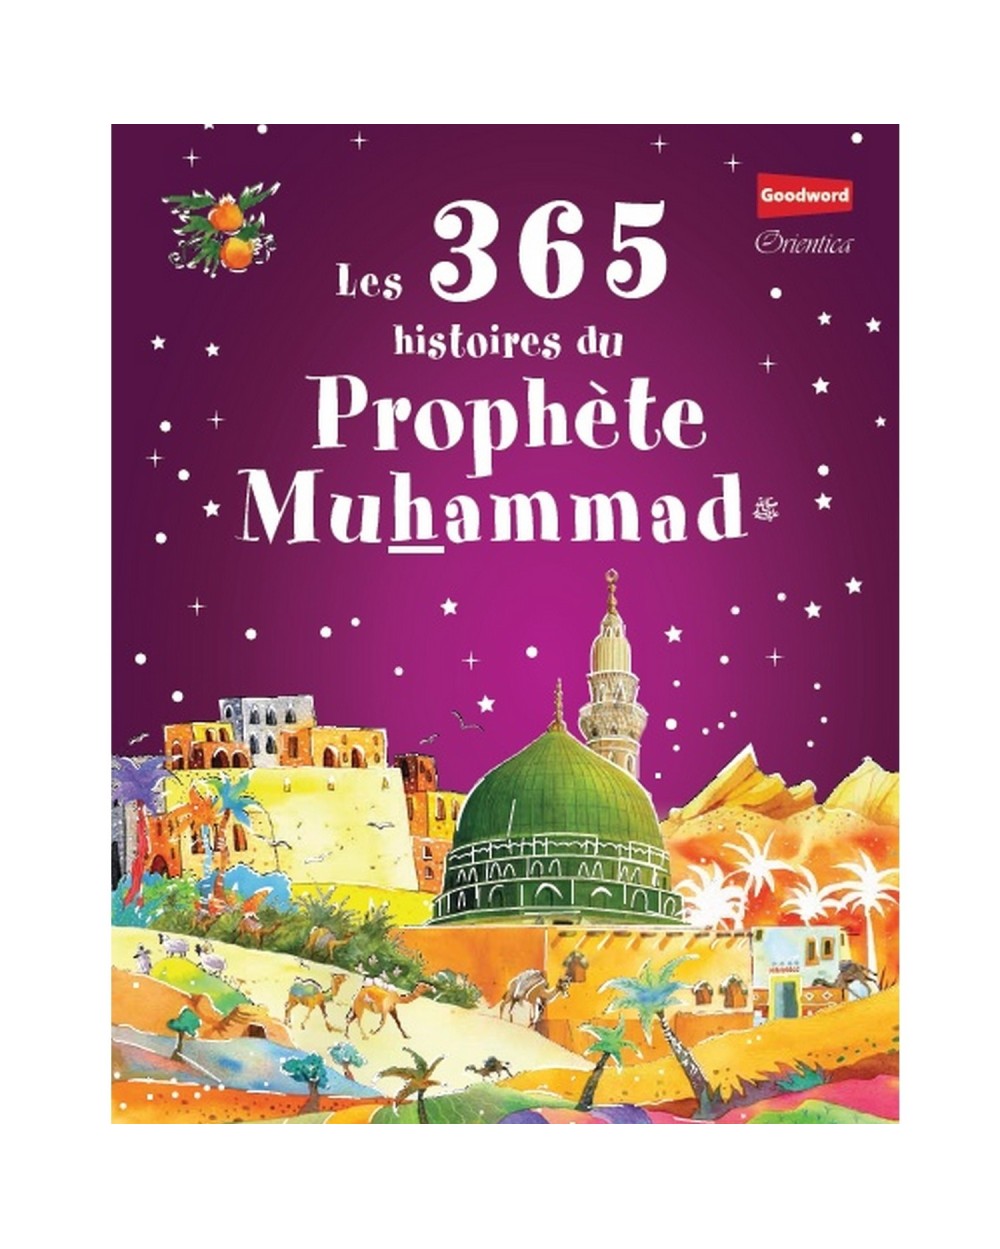 Les 365 histoires du Prophète Muhammad ﷺ